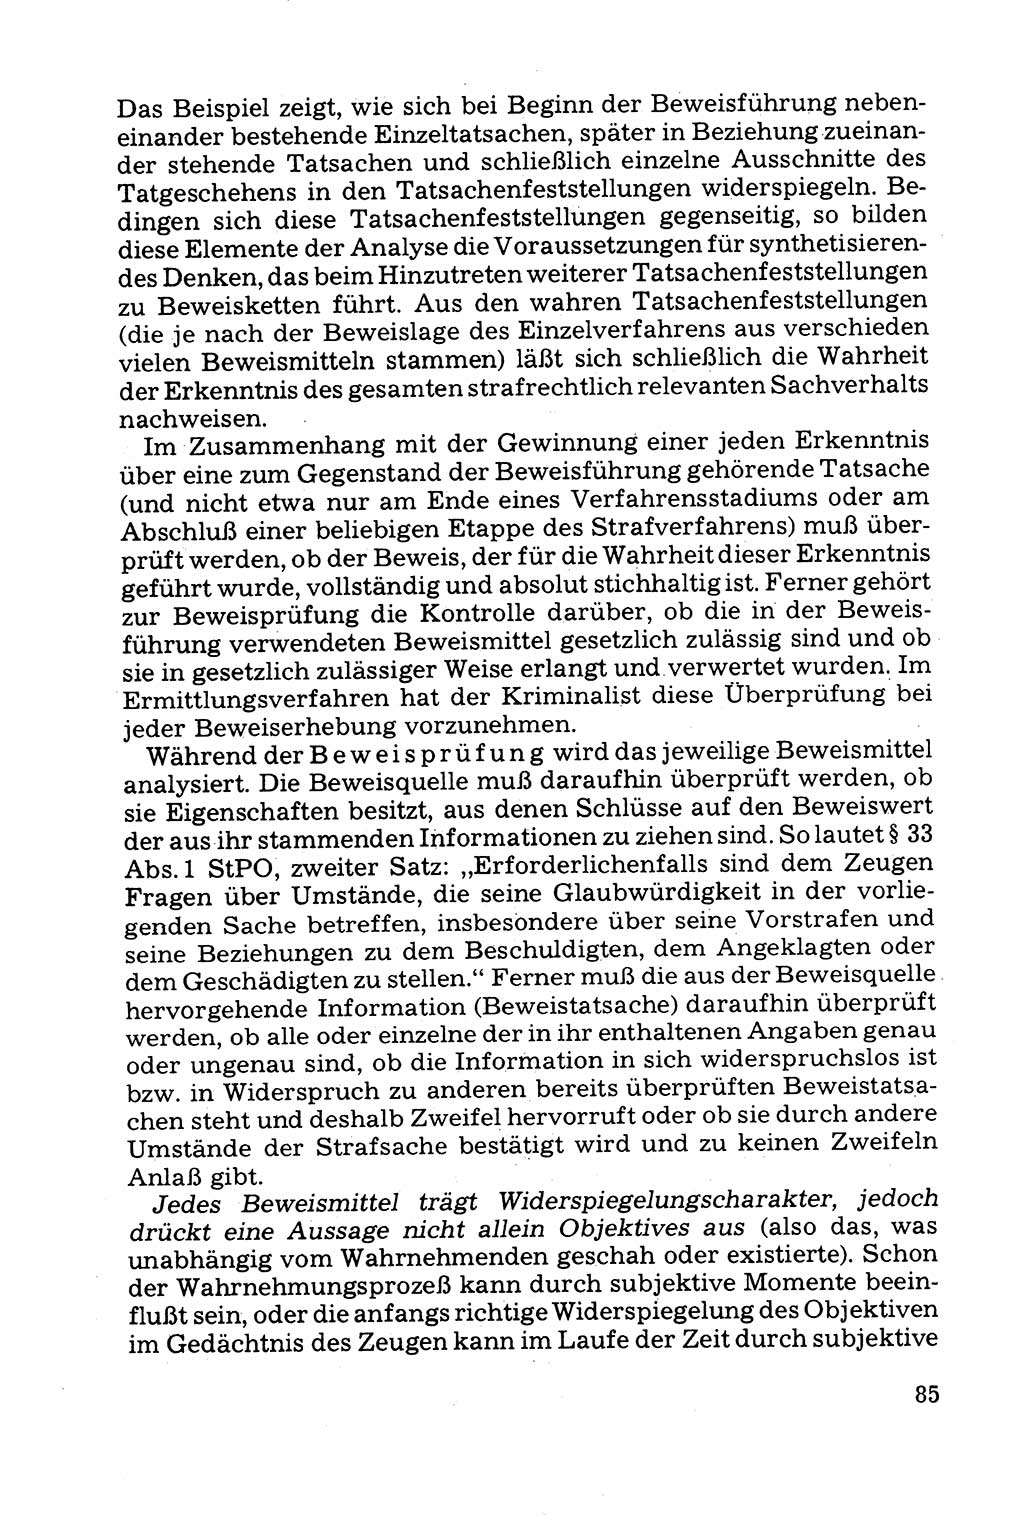 Grundfragen der Beweisführung im Ermittlungsverfahren [Deutsche Demokratische Republik (DDR)] 1980, Seite 85 (Bws.-Fhrg. EV DDR 1980, S. 85)